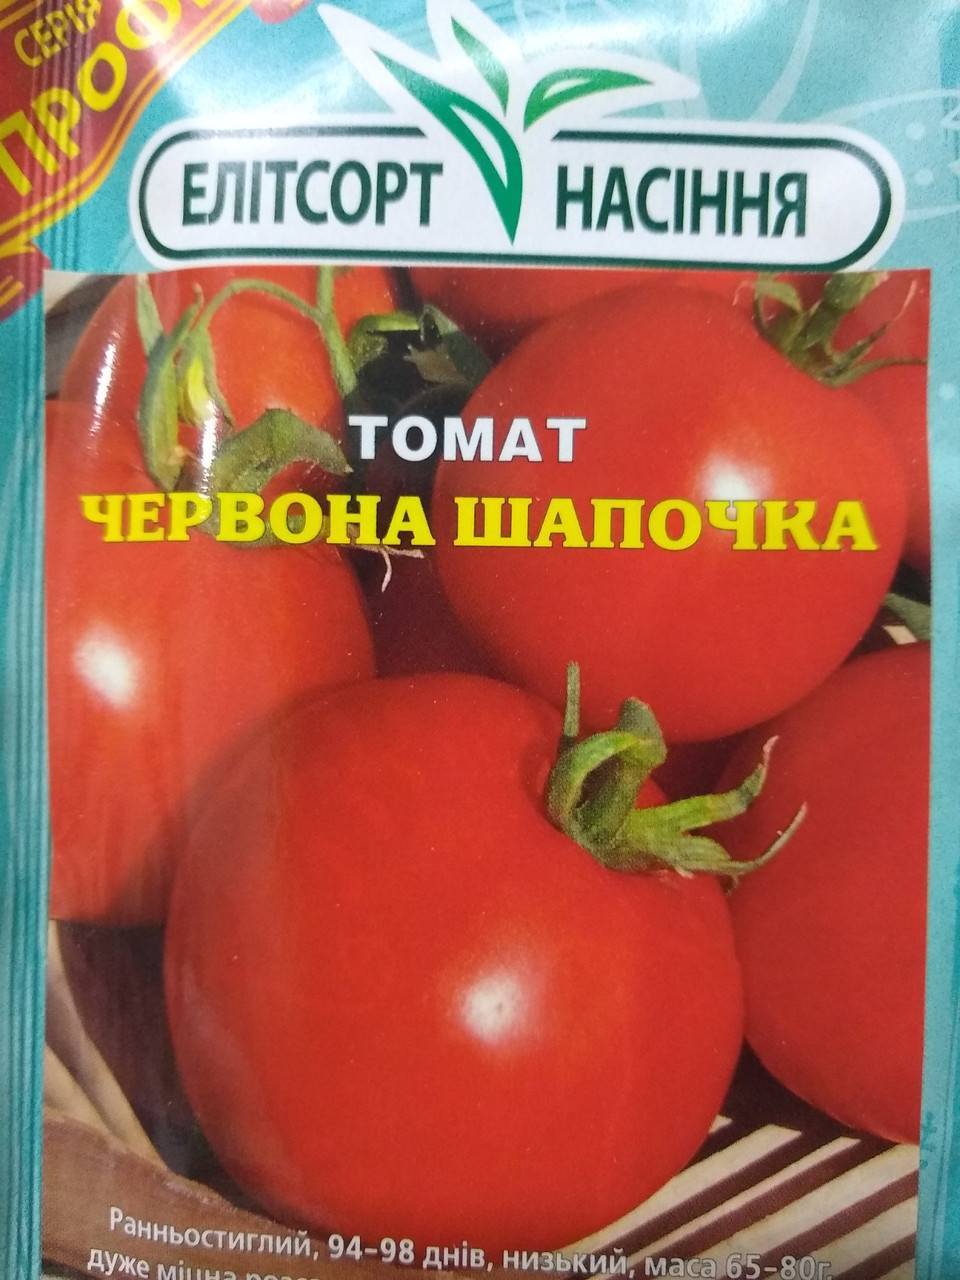 Сорт томата «красная шапочка»: описание, характеристика, посев на рассаду, подкормка, урожайность, фото, видео и самые распространенные болезни томатов